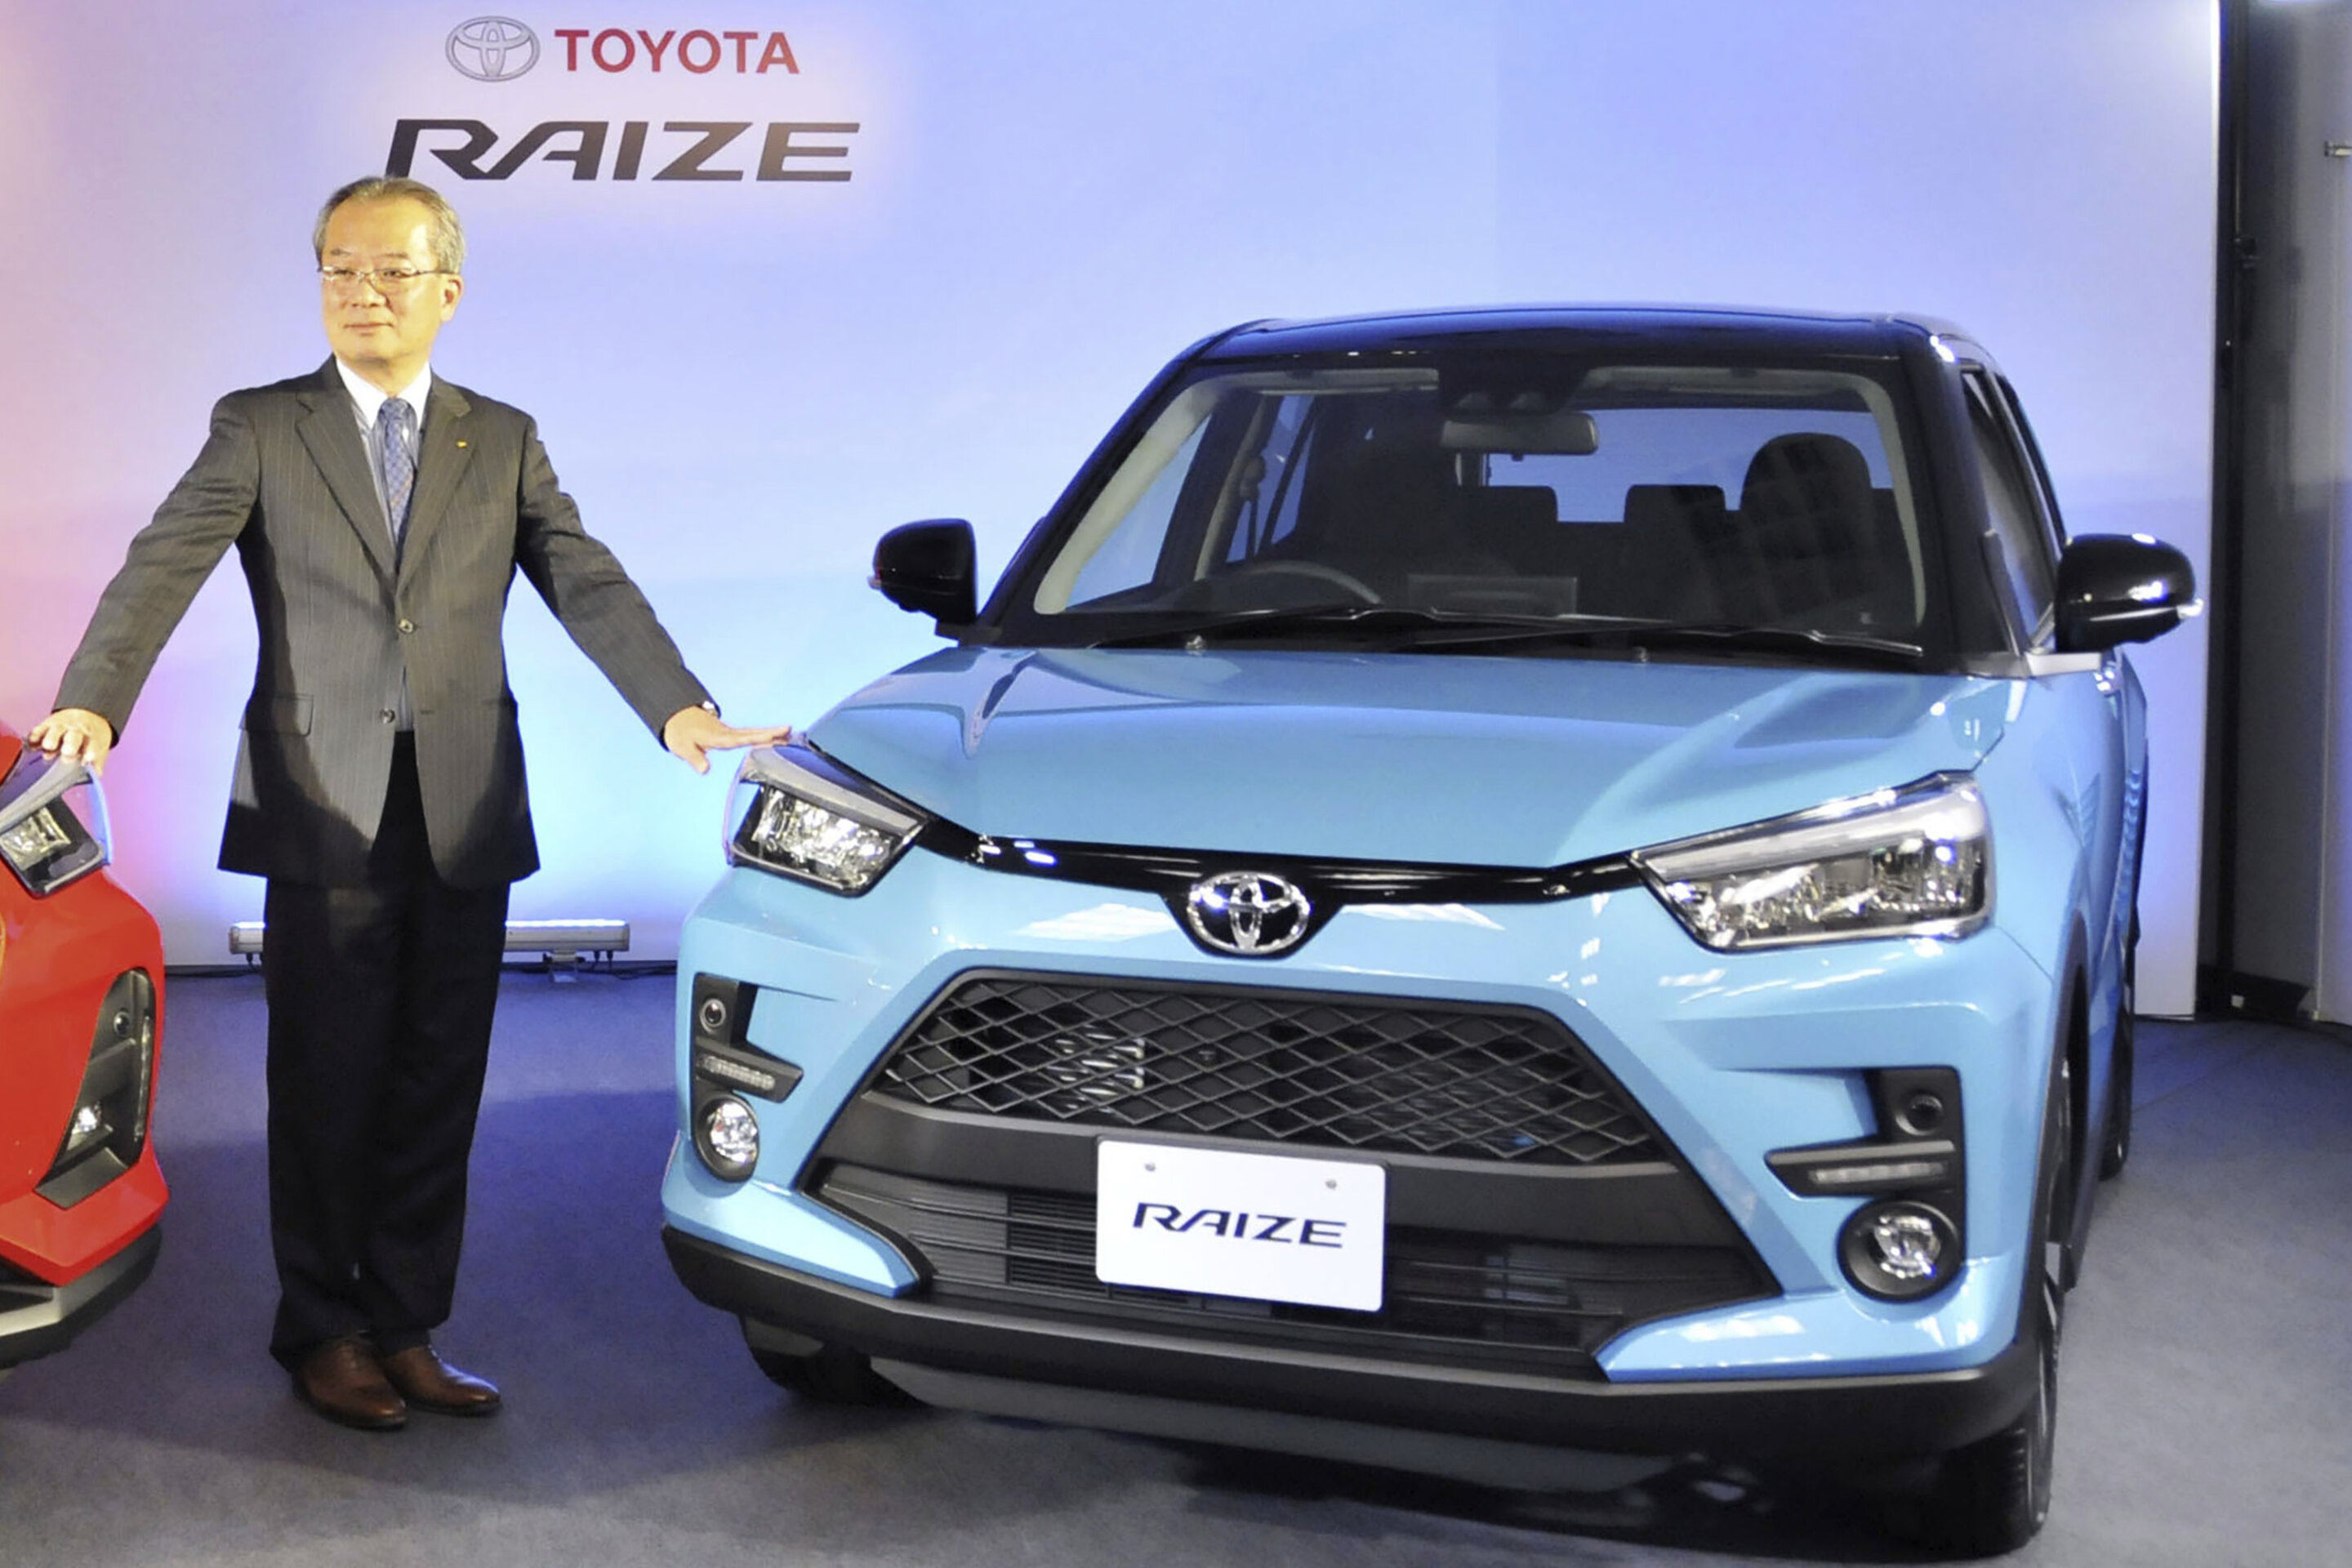 Japan’s Toyota discloses improper crash tests at Daihatsu subsidiary